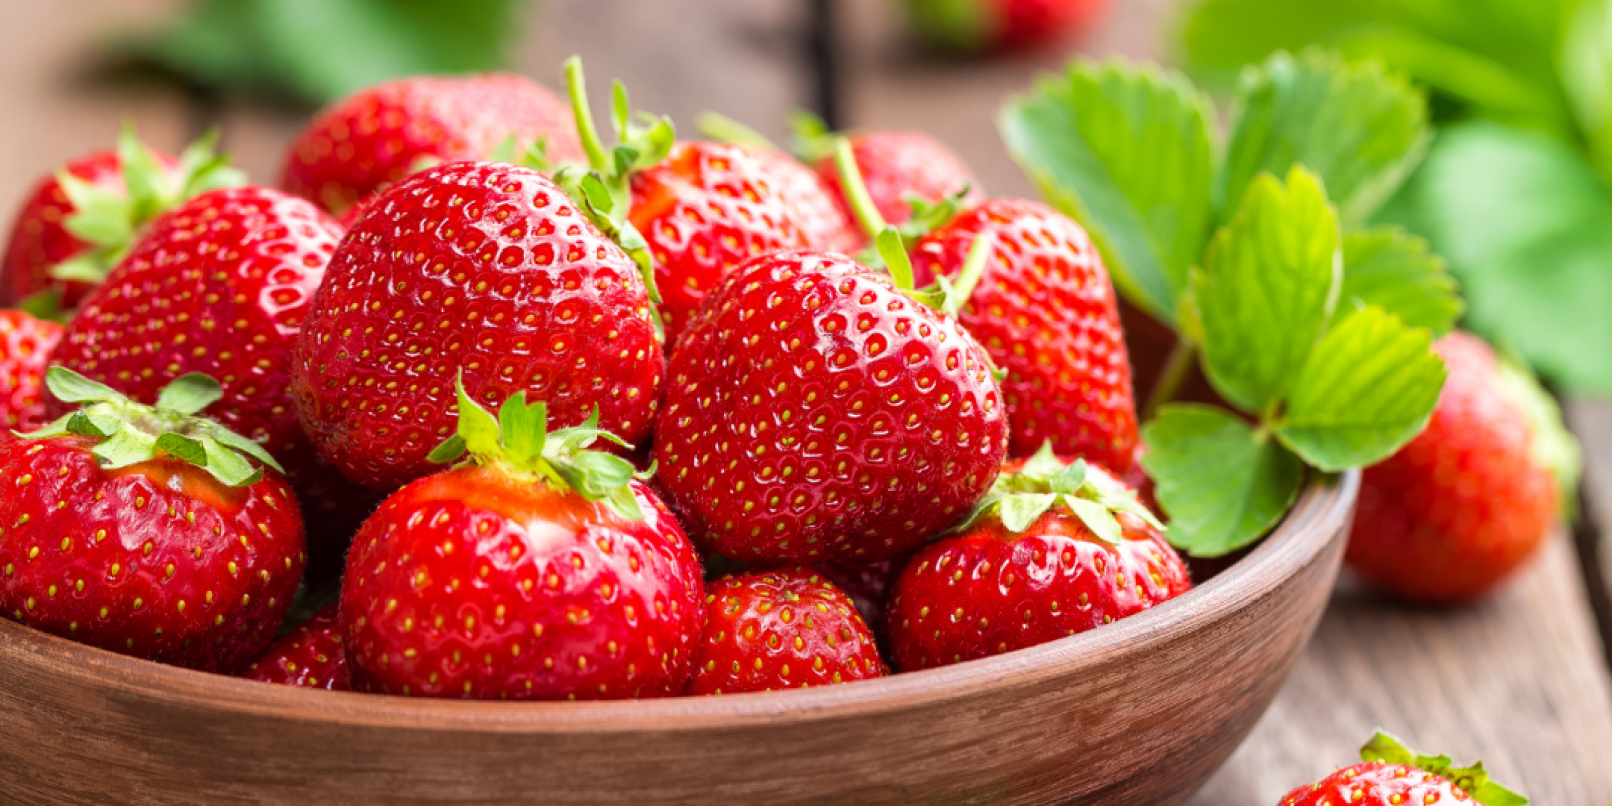 Wieder vergleichsweise früh konnten die Bauern schon der Ernte der Früchte anfangen und bieten jetzt bereits die ersten Erdbeeren aus der heimischen Region an.